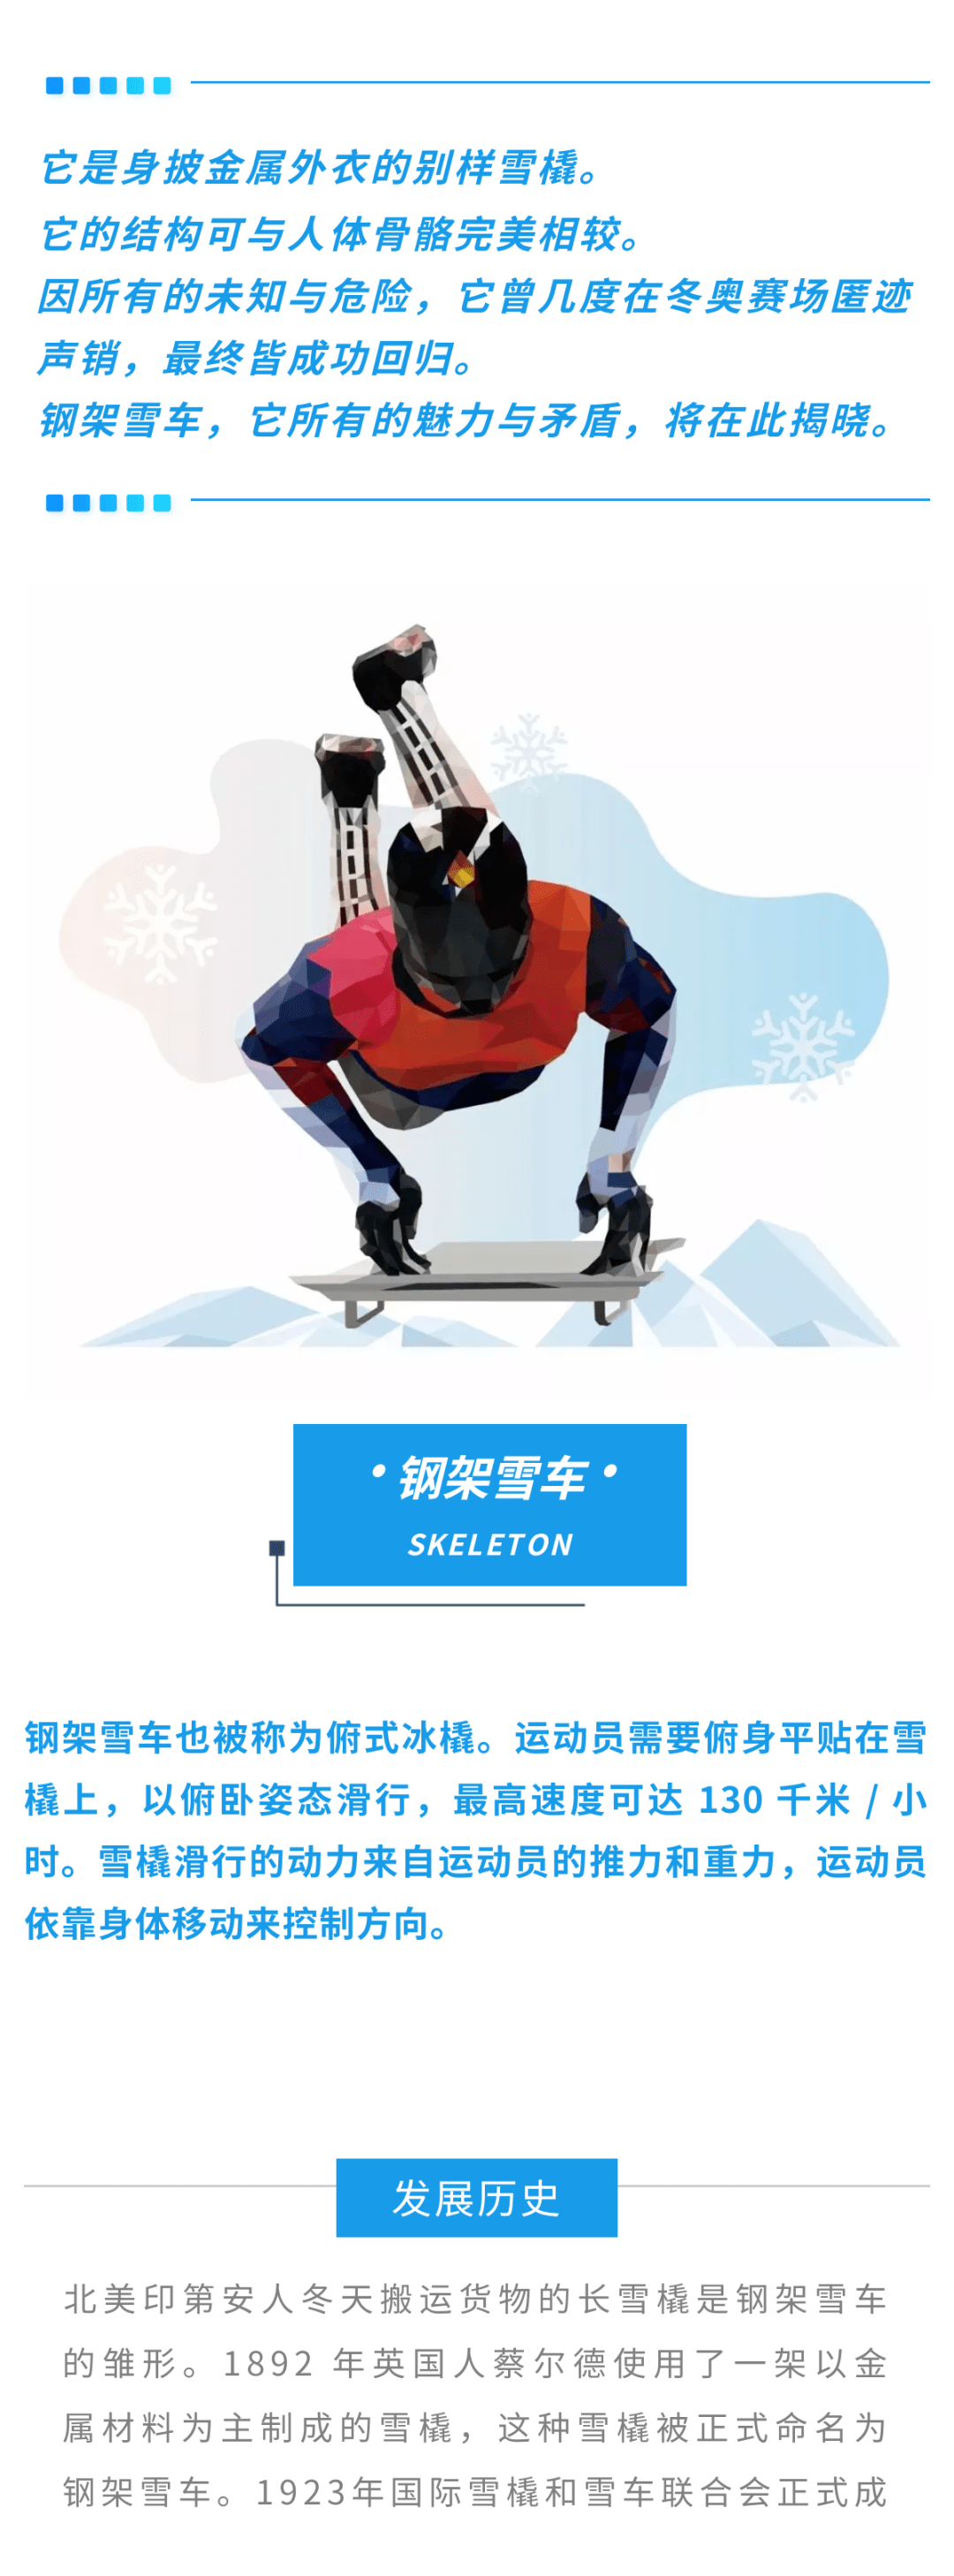 图解北京冬奥项目钢架雪车因危险曾被取消的项目